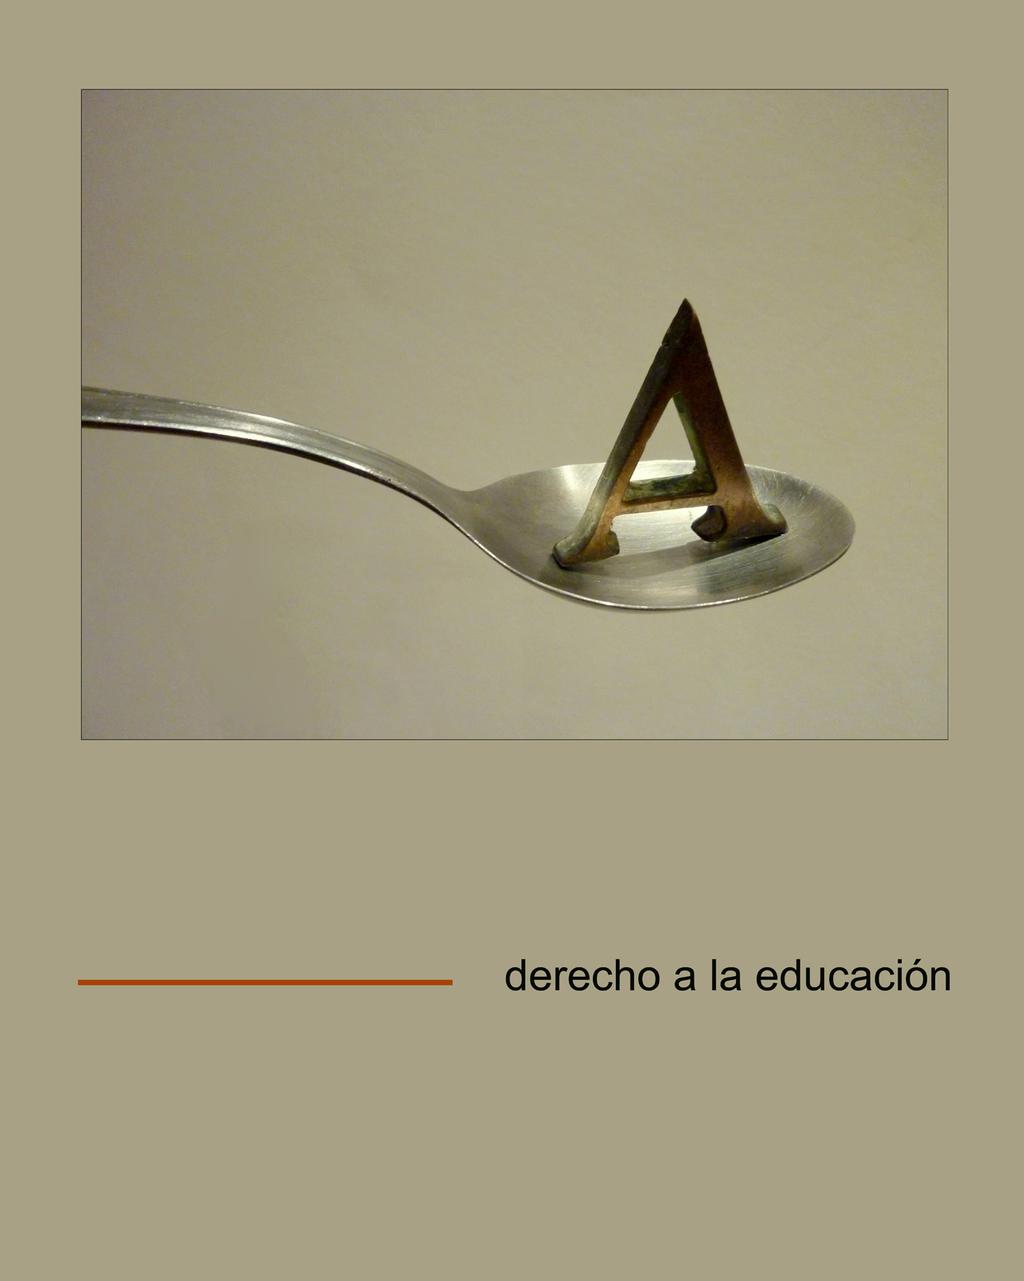 198 Derecho a la educación (inédito) experimental. Ii. creaciones (ed.